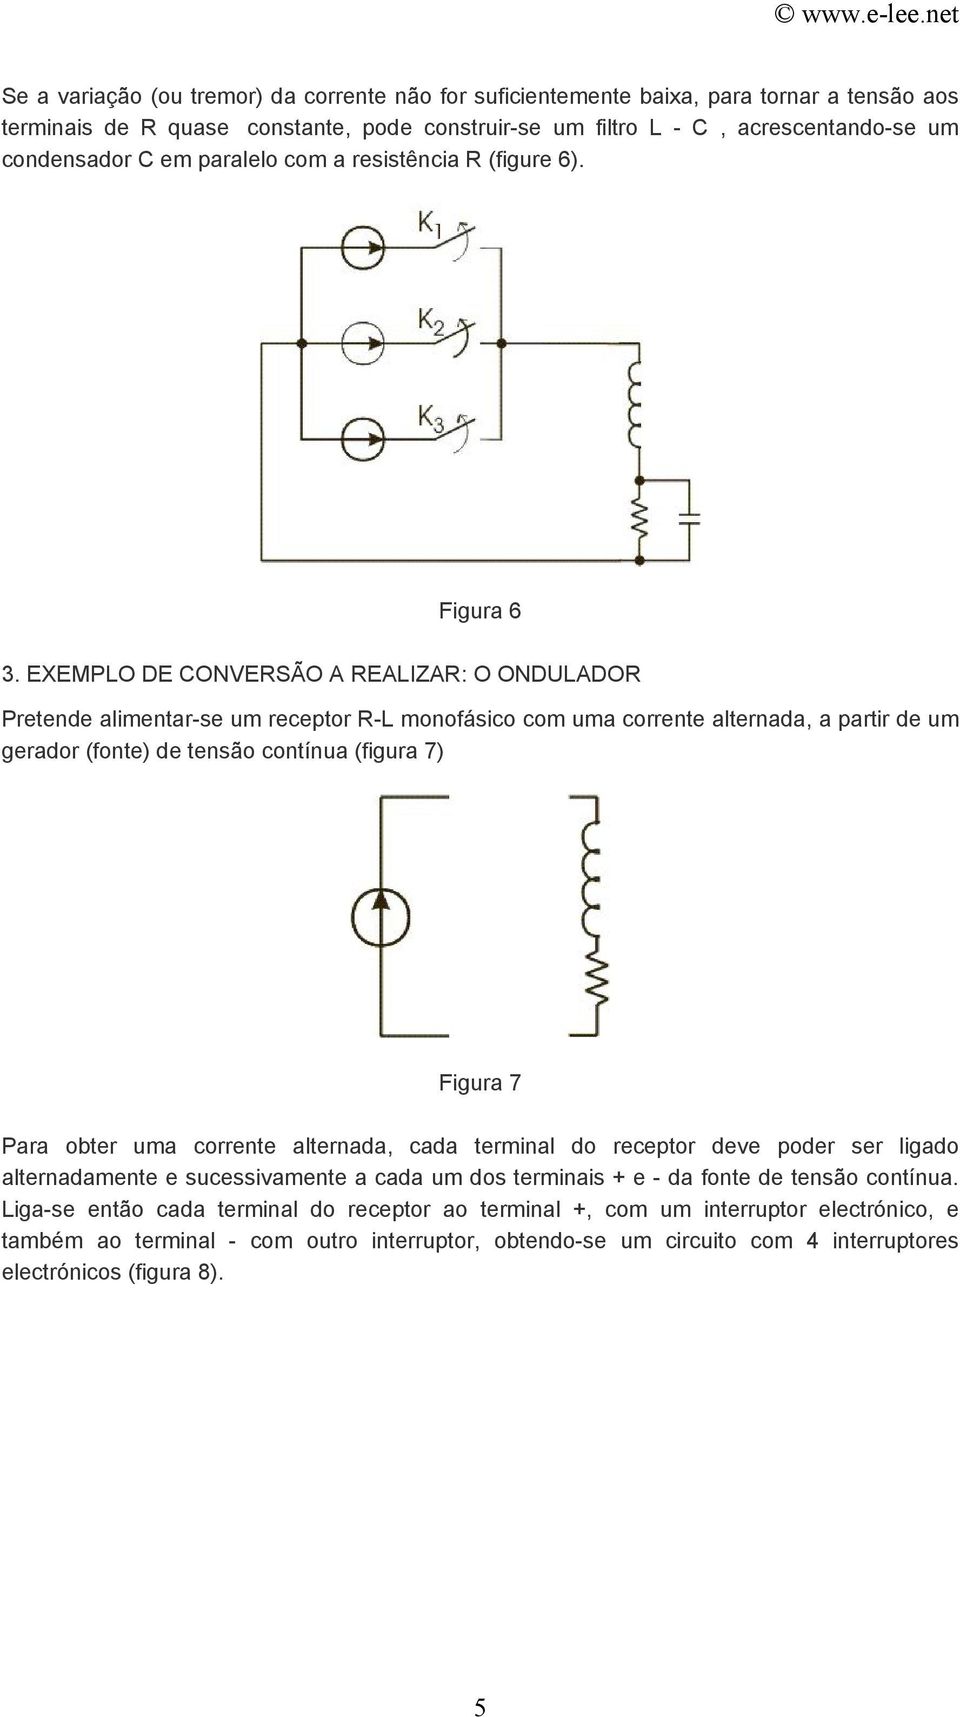 EXEMPLO DE CONVERSÃO A REALIZAR: O ONDULADOR Pretende alimentar-se um receptor R-L monofásico com uma corrente alternada, a partir de um gerador (fonte) de tensão contínua (figura 7) Figura 7 Para